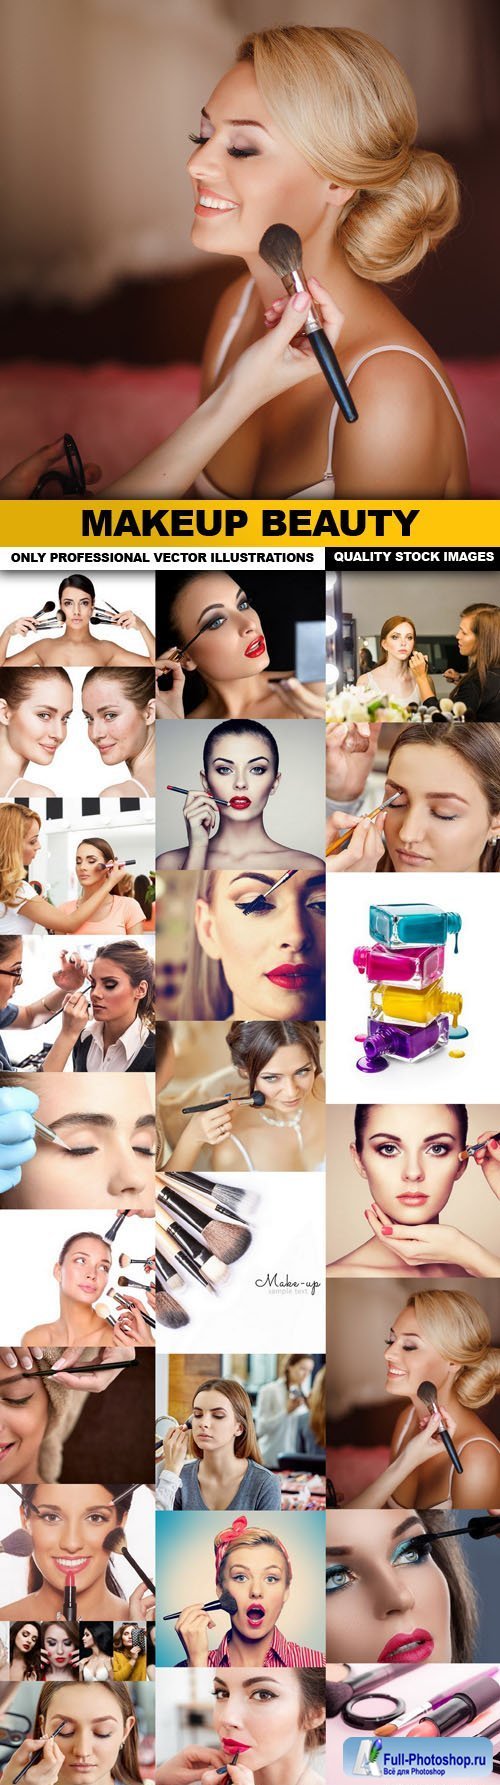 Makeup Beauty - 25 HQ Images